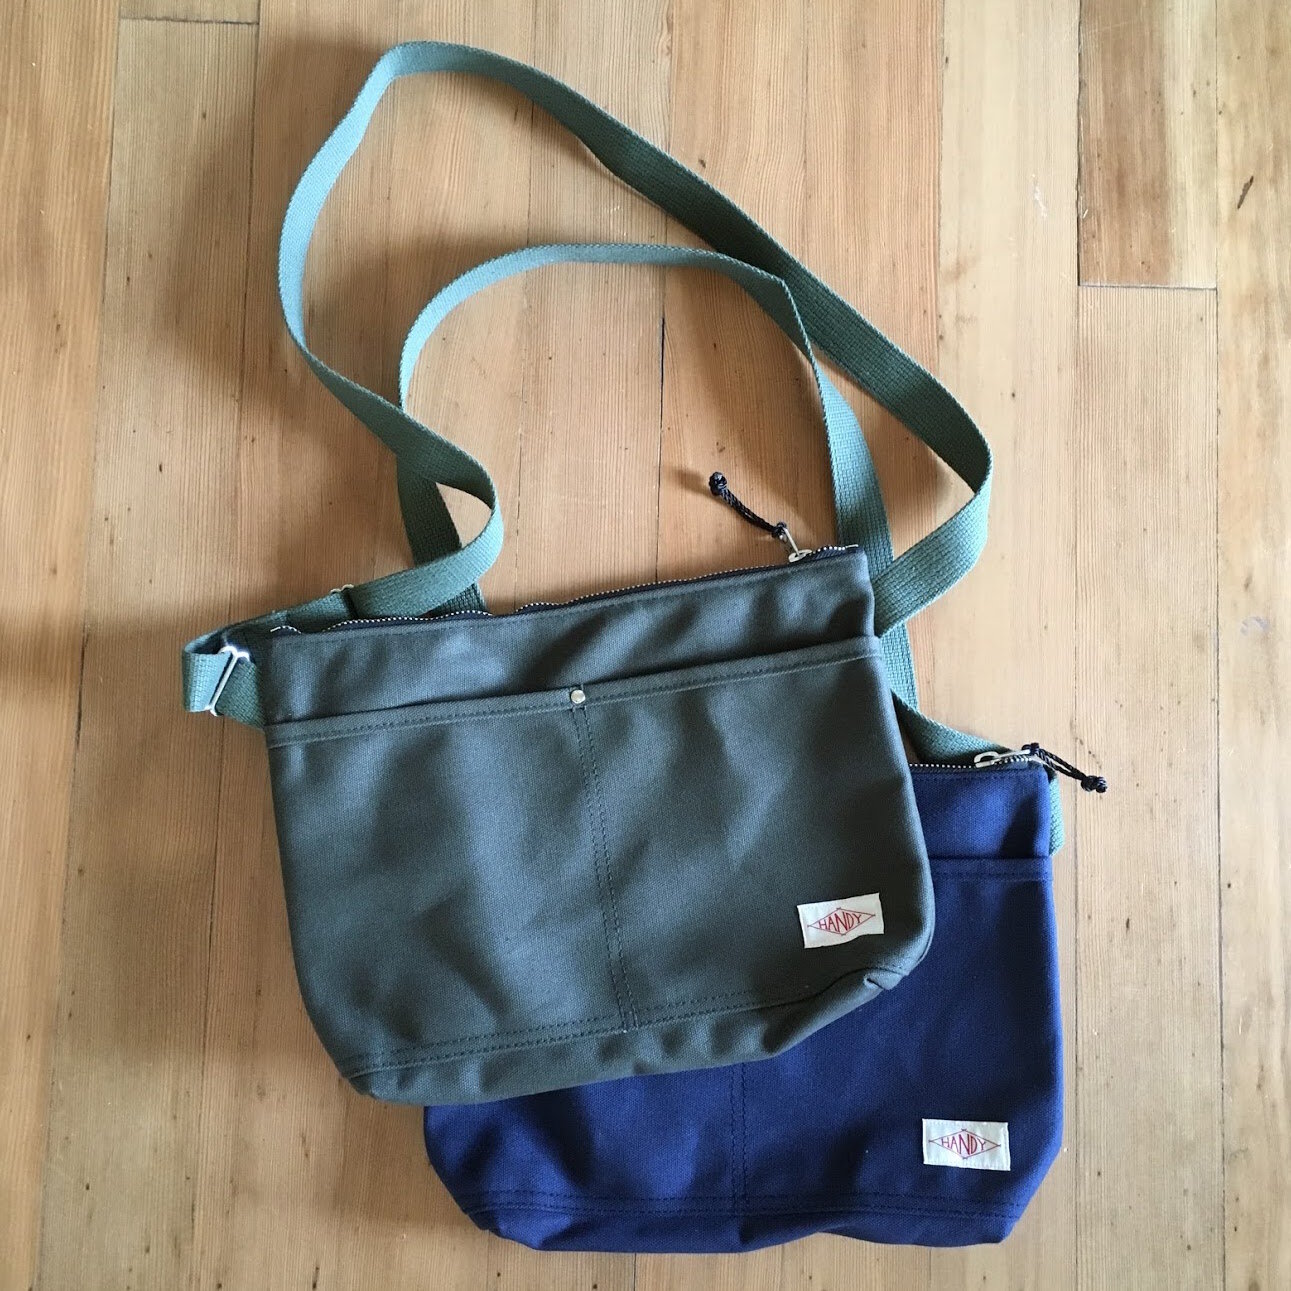 Handy Zip Musette — Handy Bag.